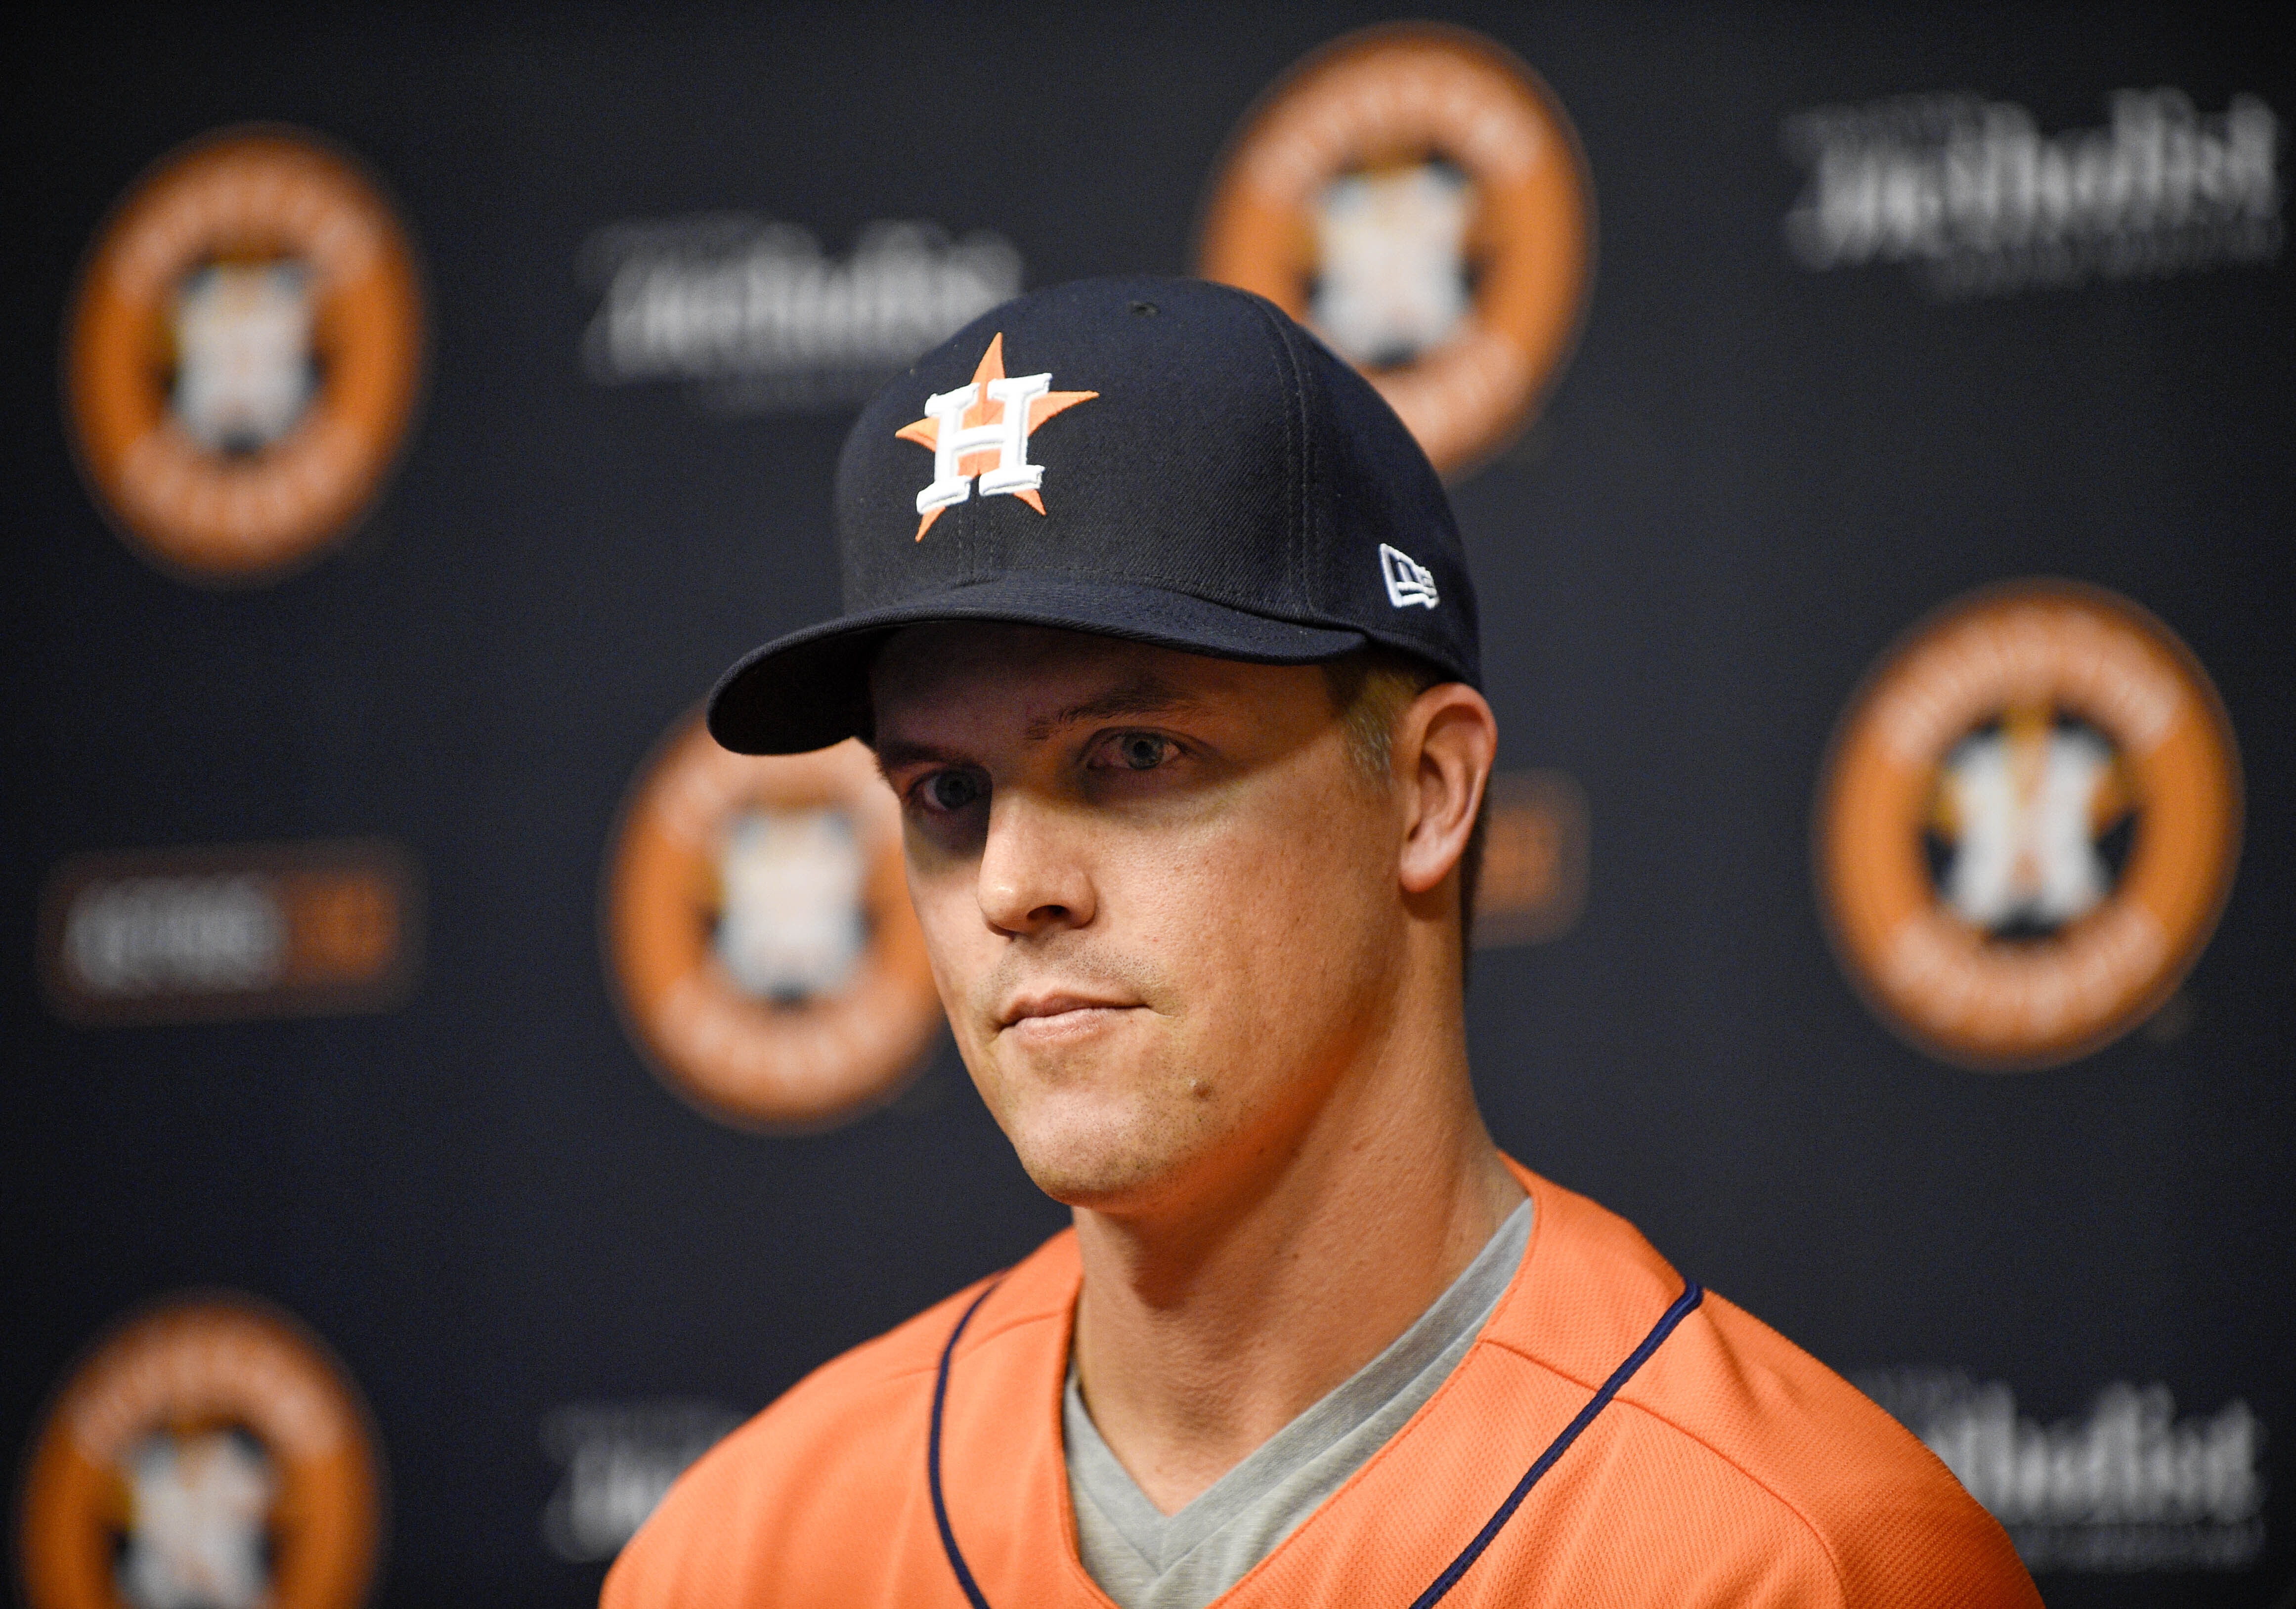 Who is Astros pitcher Zack Greinke?